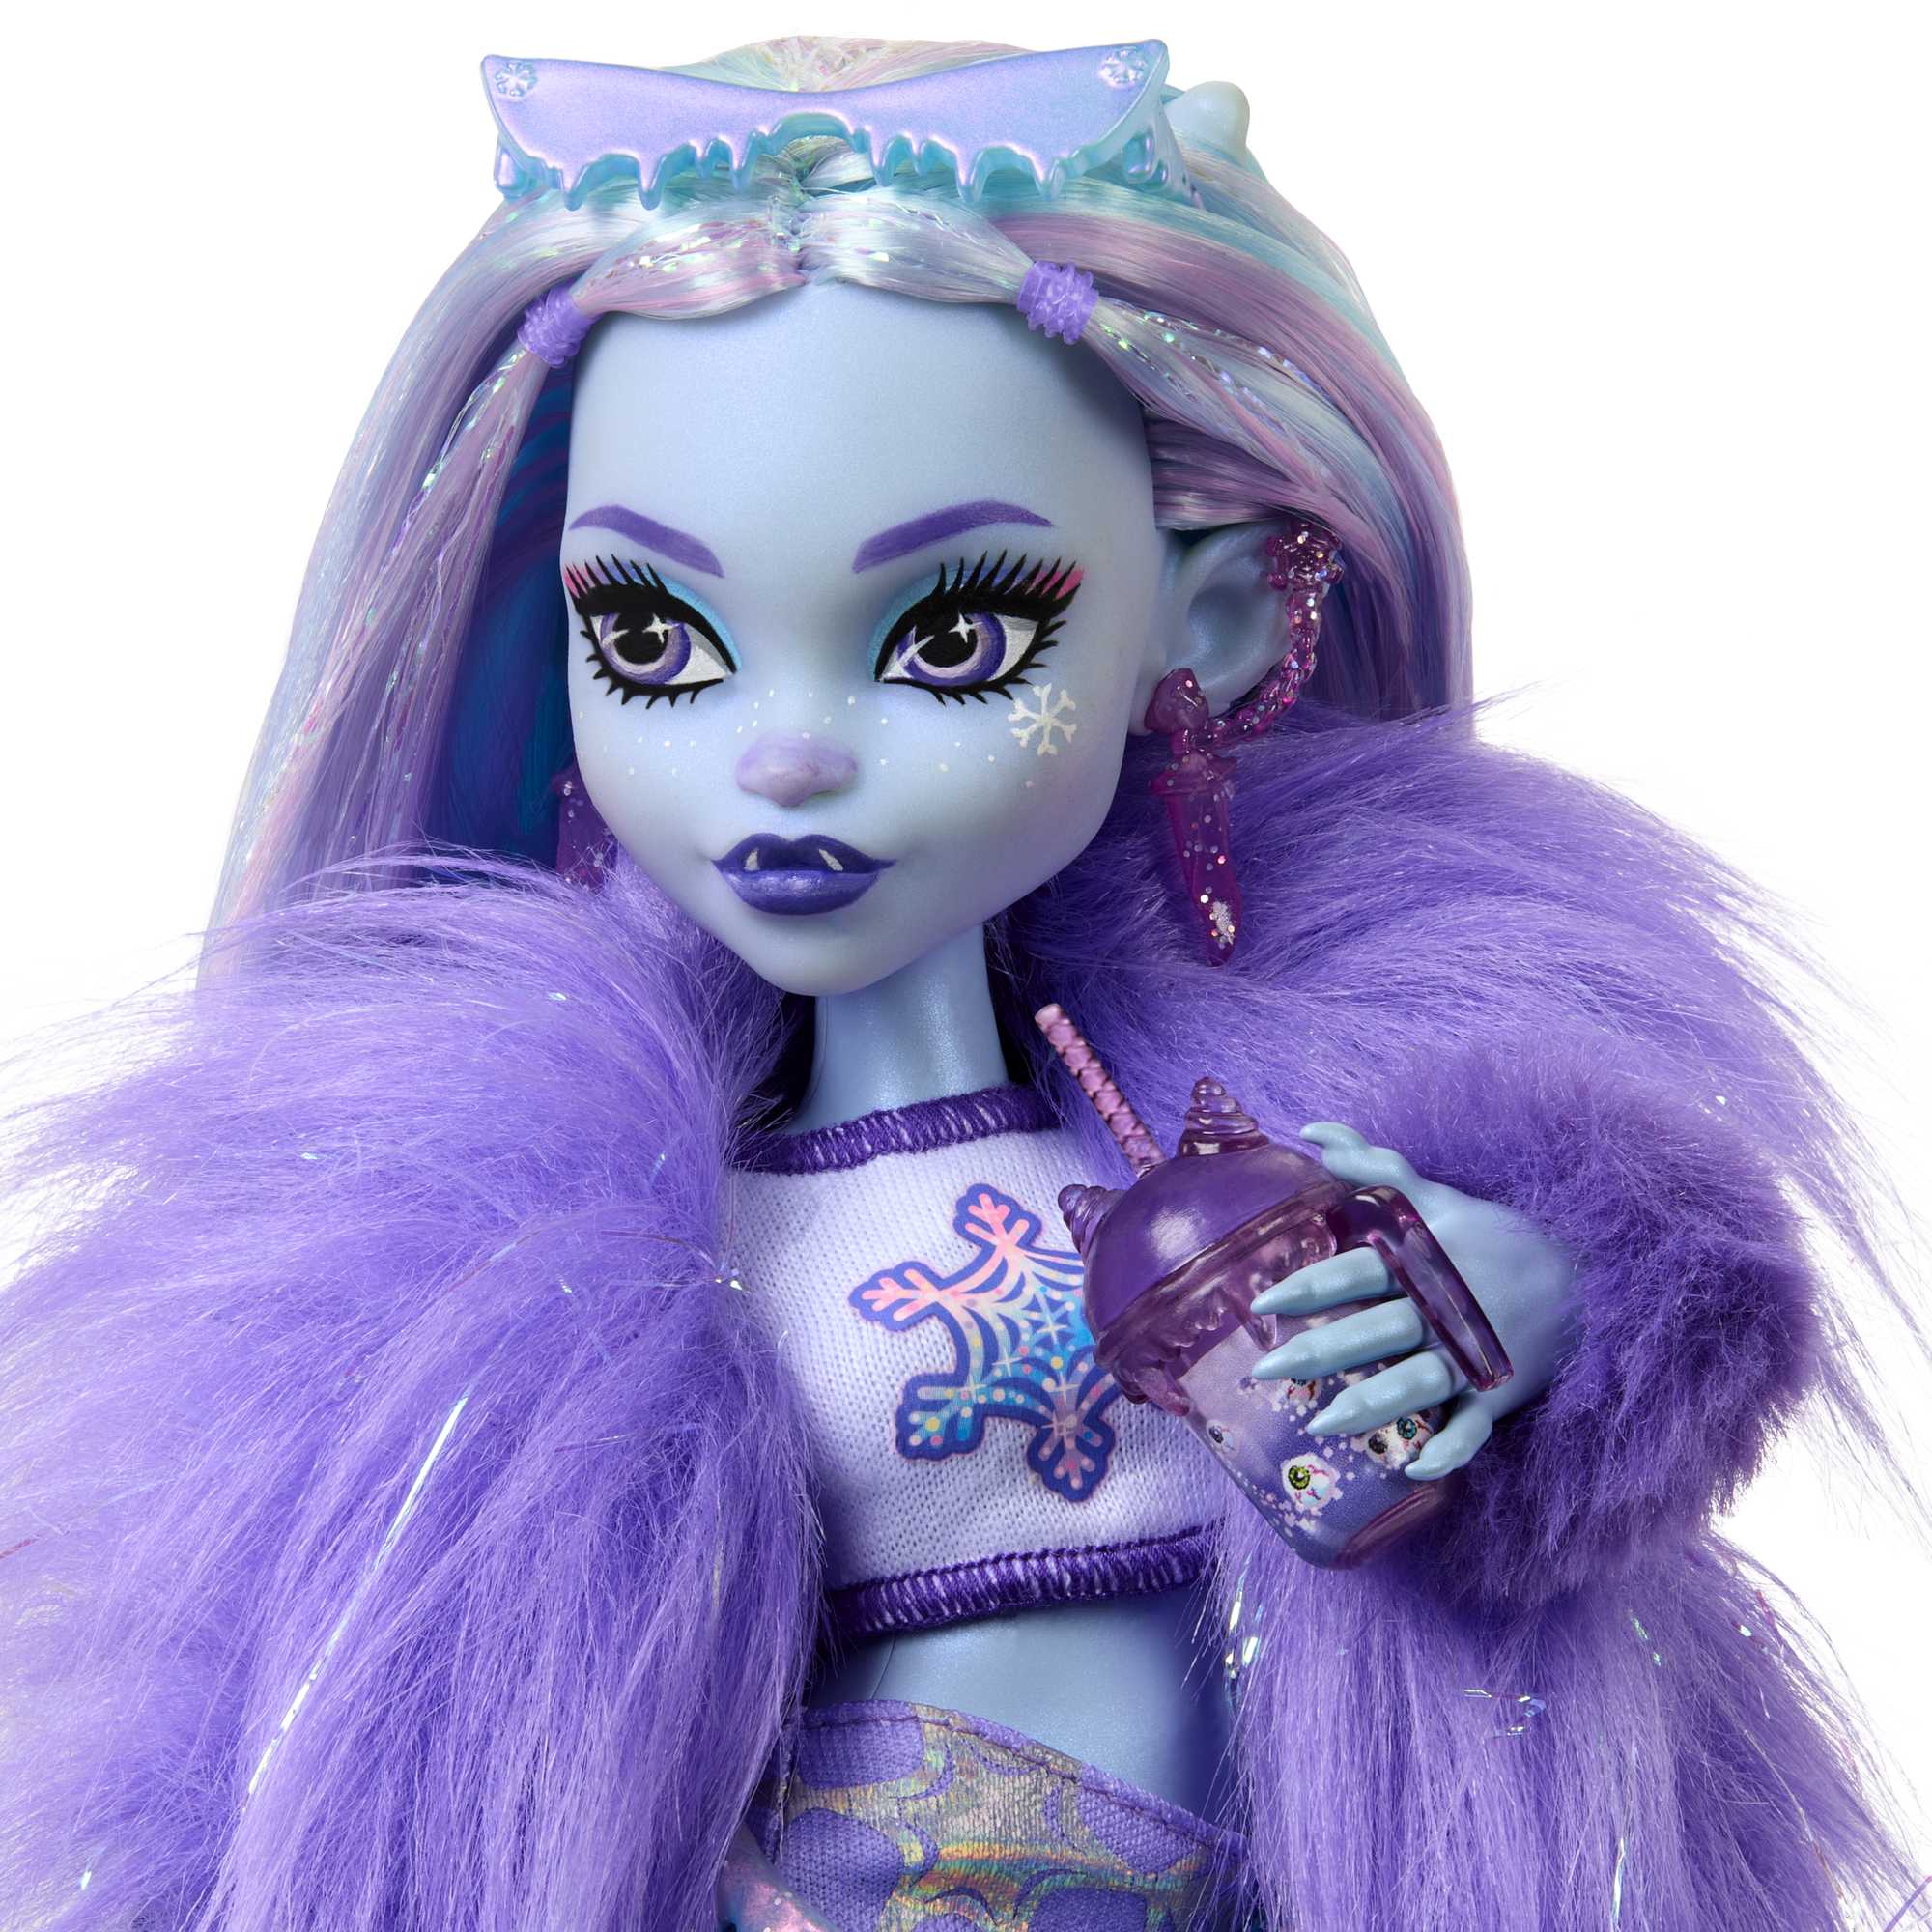 Barbie Monster High Dolls